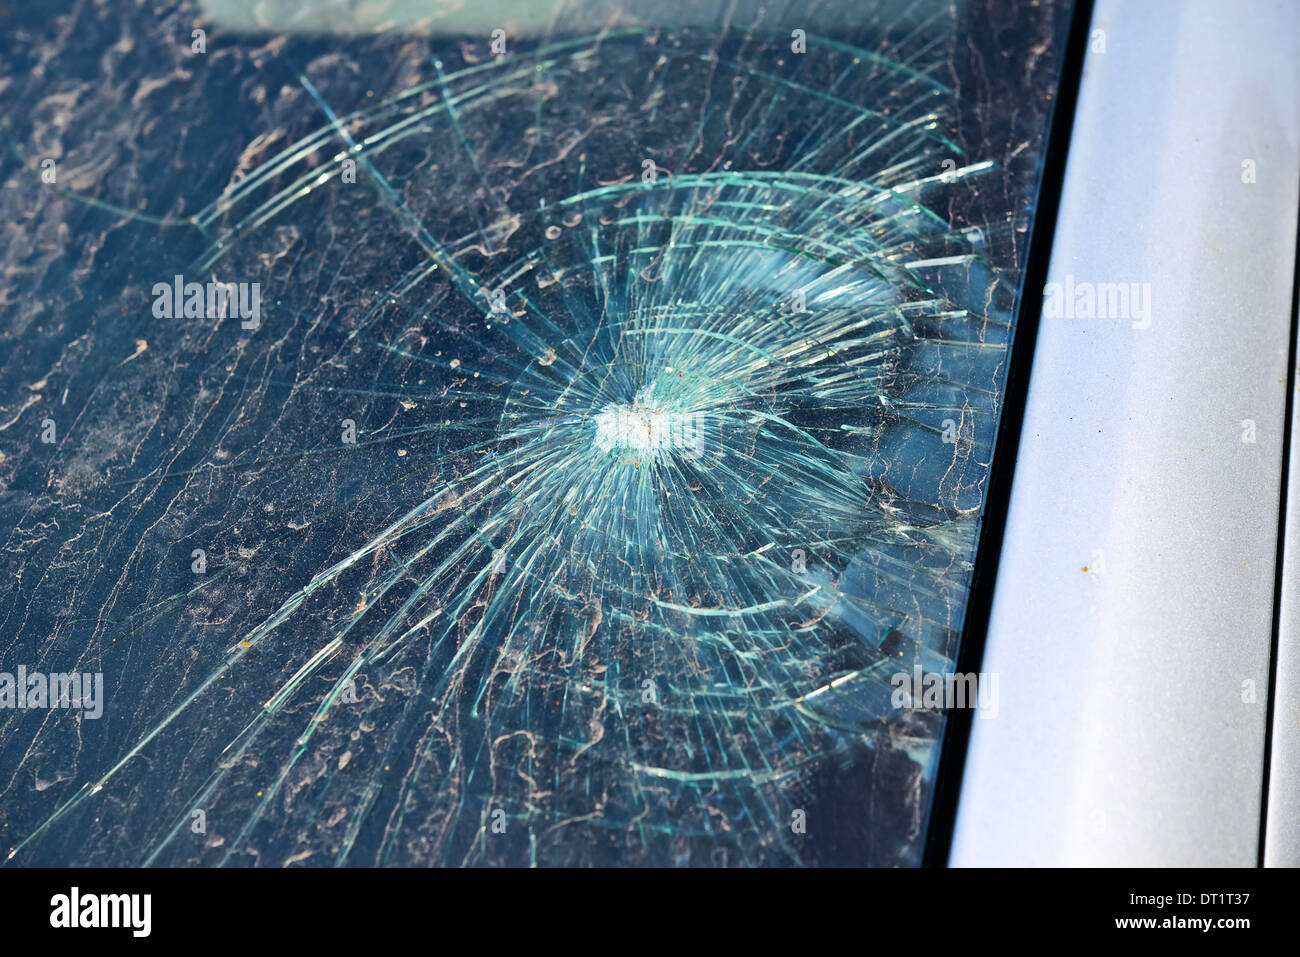 Broken Car Wipers: Über 161 lizenzfreie lizenzierbare Stockvektorgrafiken